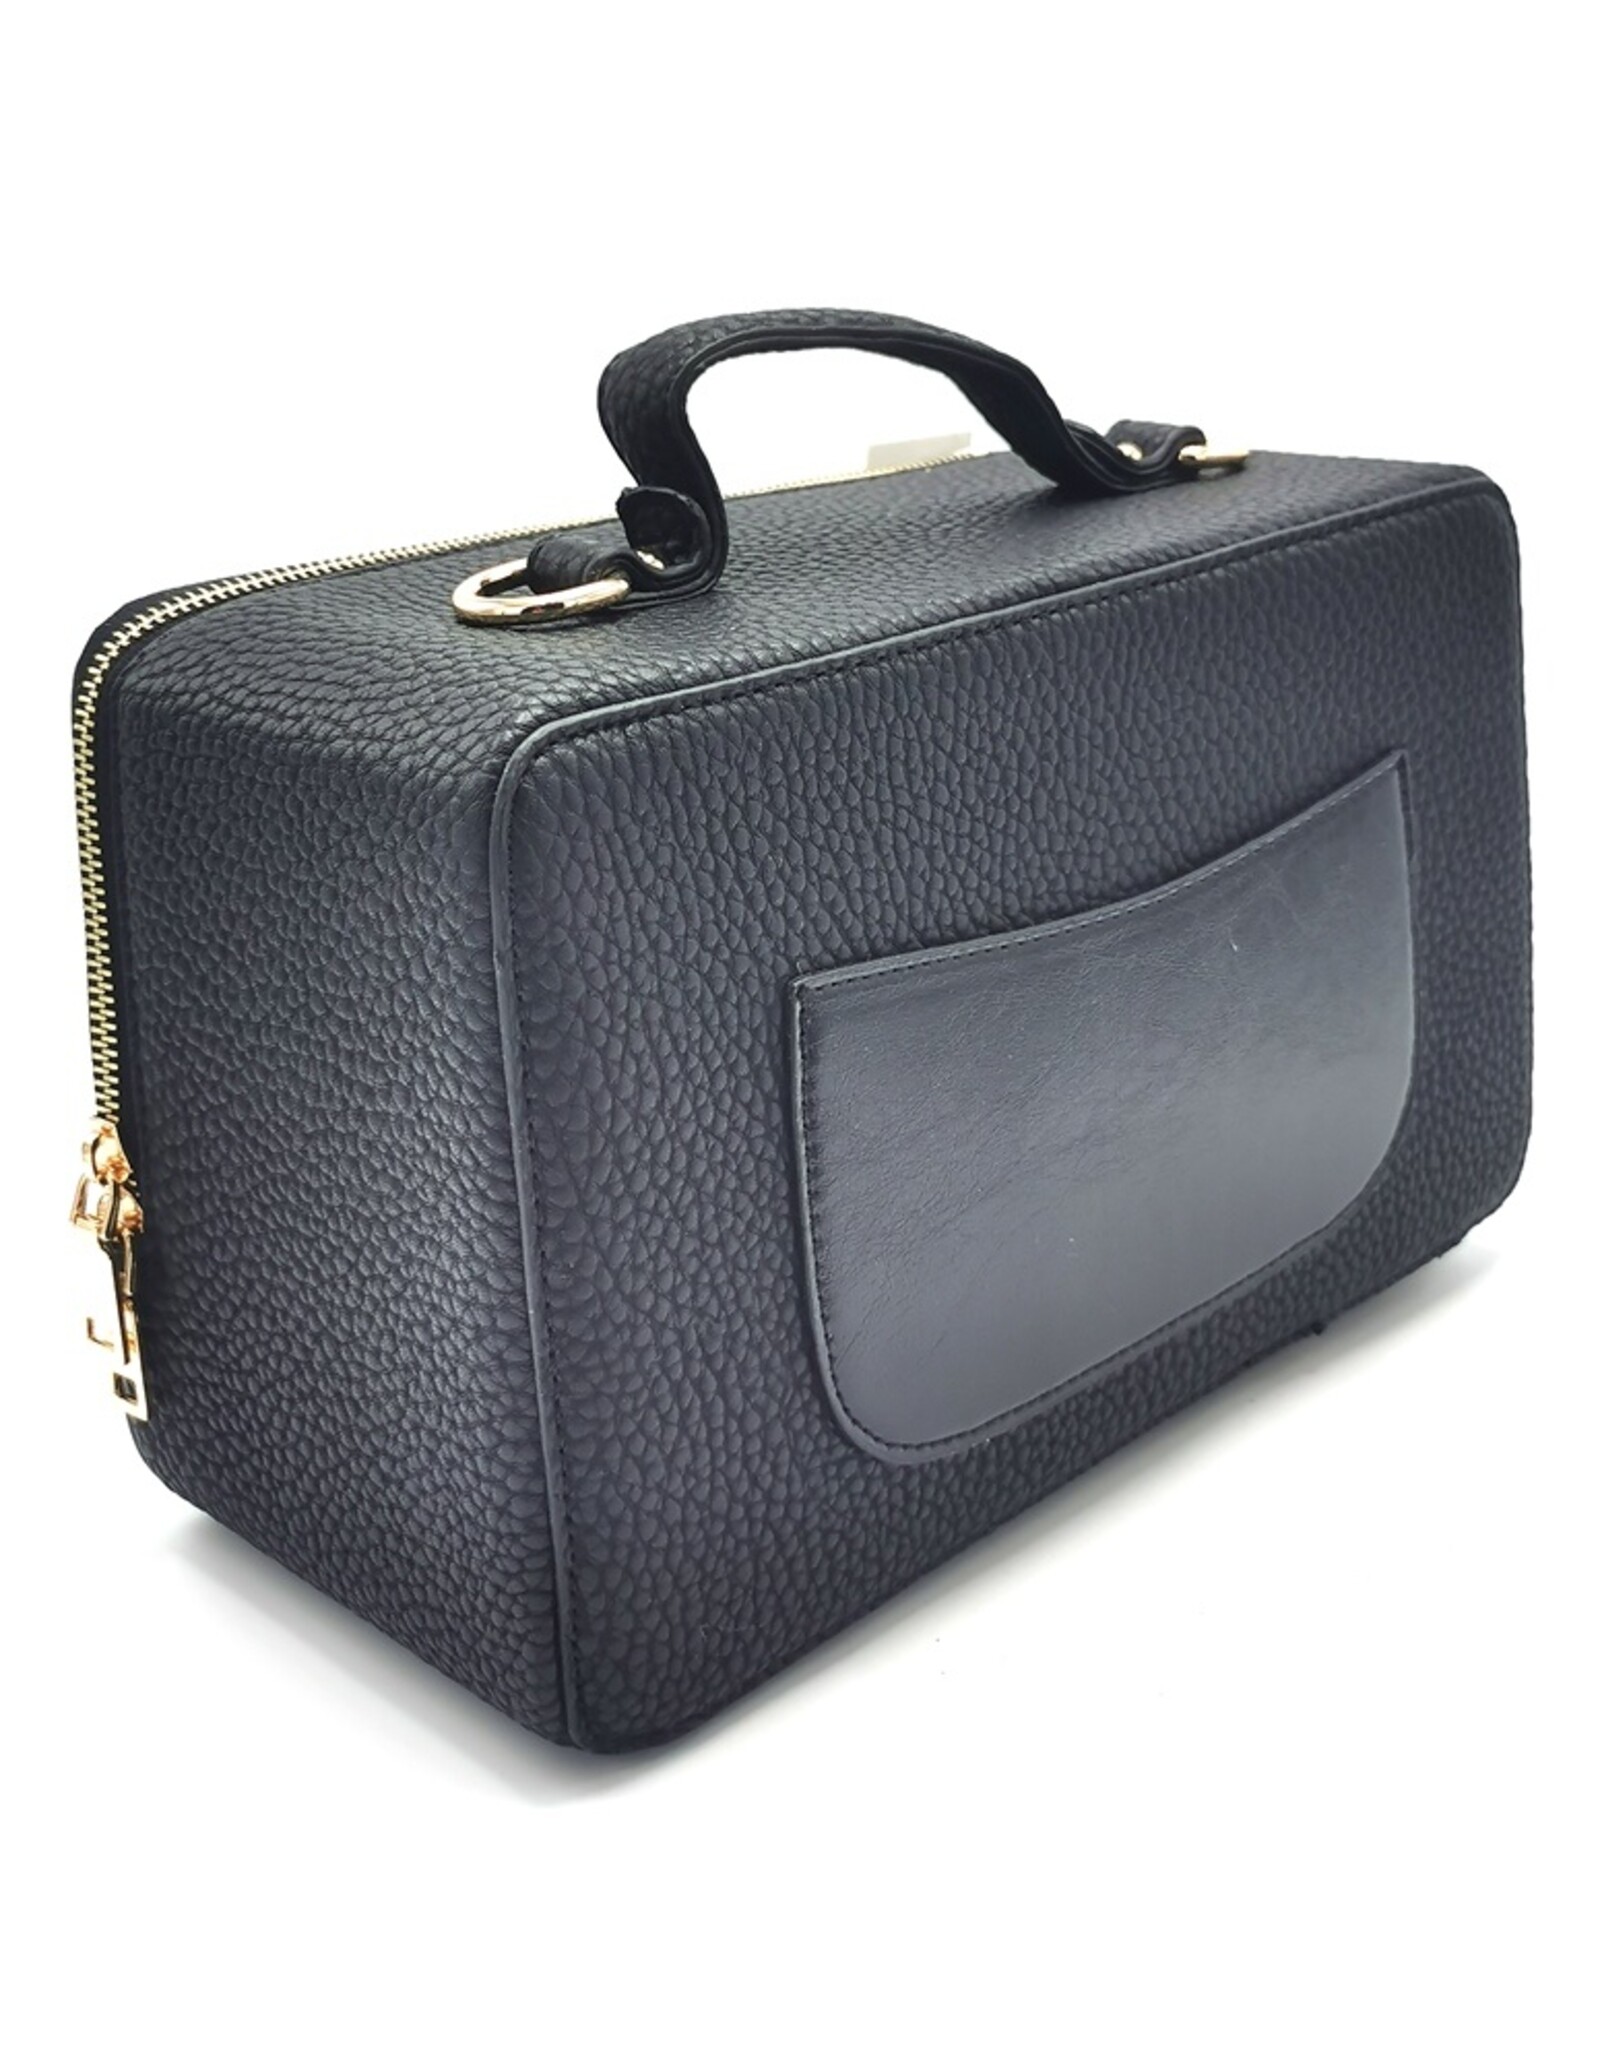 Systyle Fantasy bags and wallets - Boombox Radio Handbag black (medium)